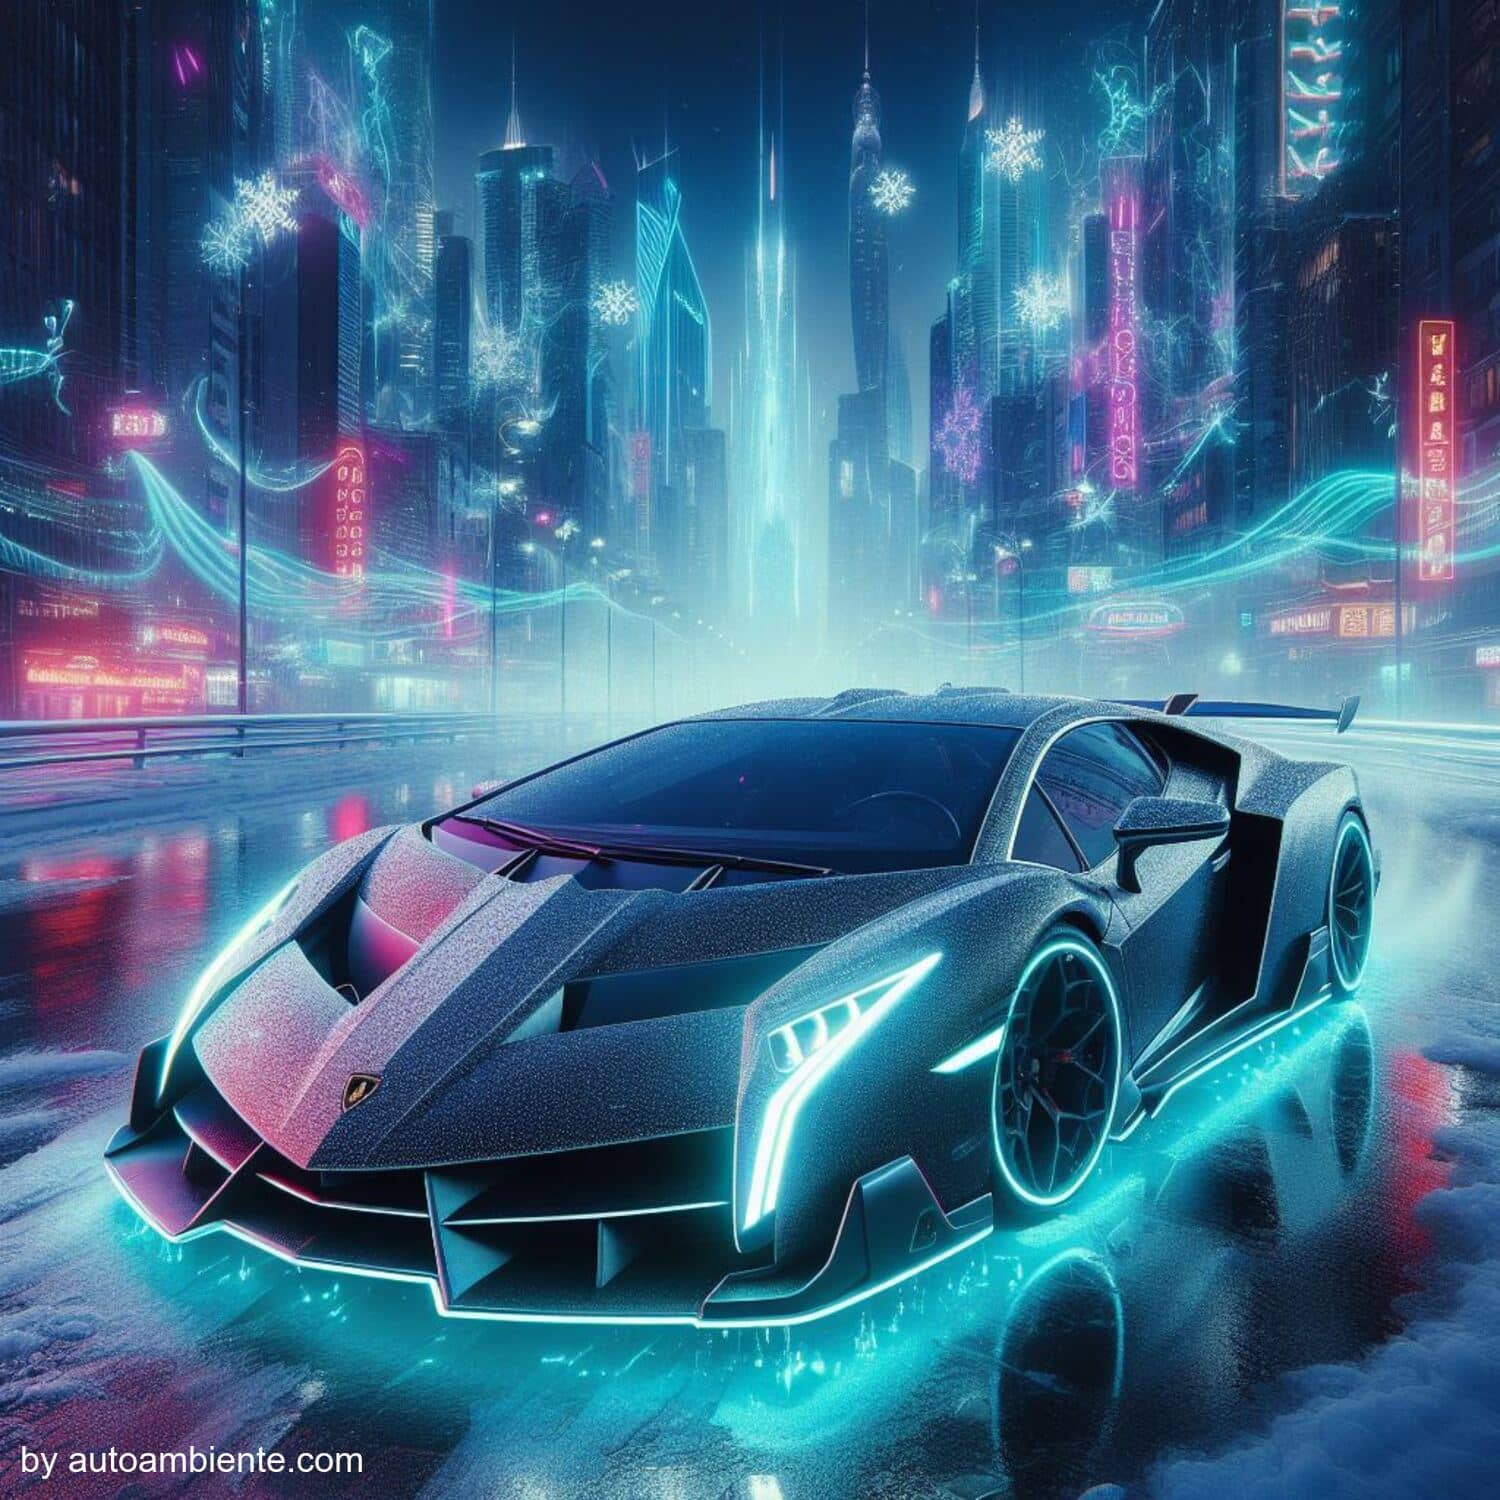 Why the Lamborghini Veneno Costs Millions by autoambiente.com